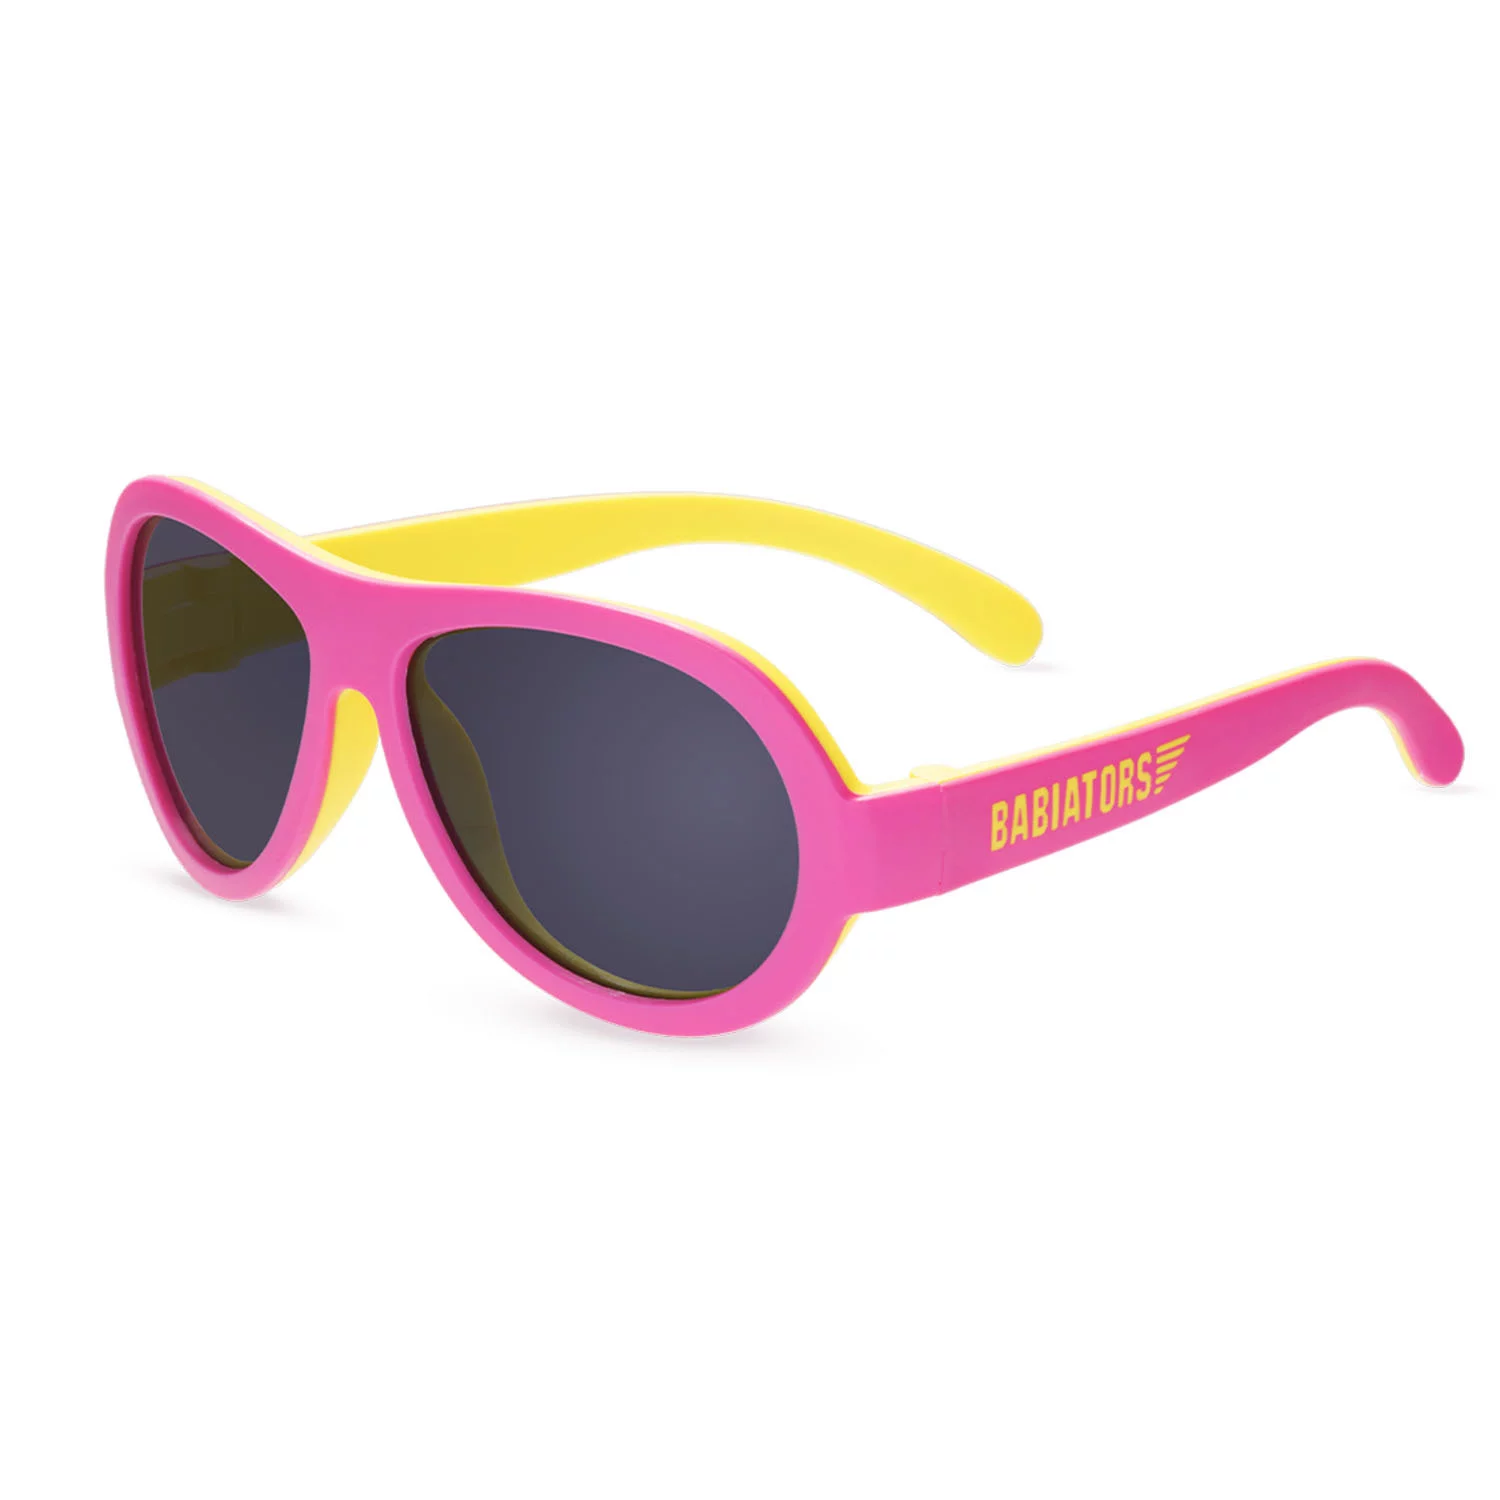 Päikeseprillid Babiators Aviator 2 värvi Pink Lemonade, 3-5a